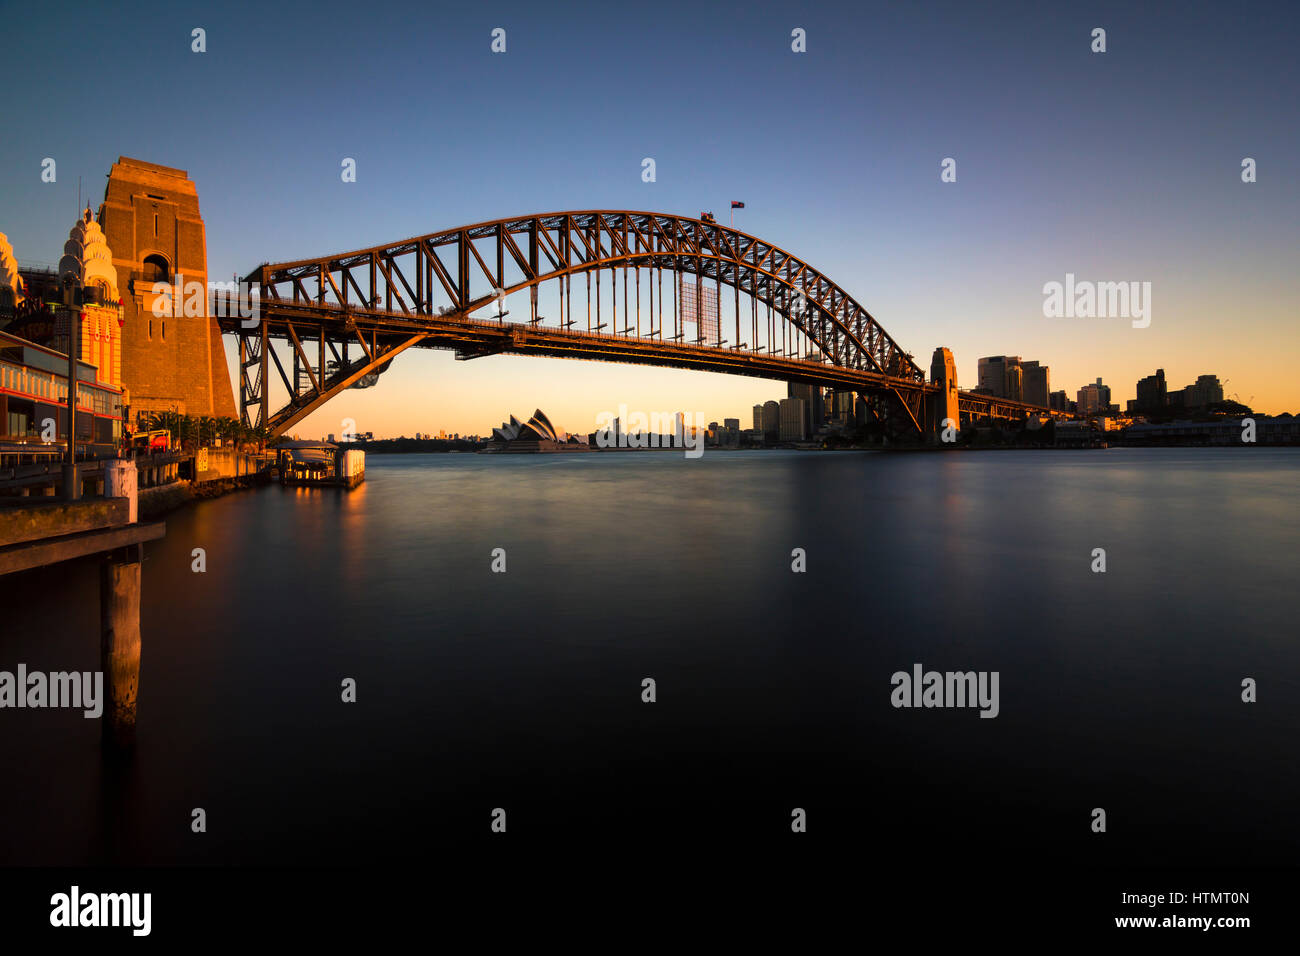 Sydney Harbor Bridge, Sydney, Australia Stock Photo